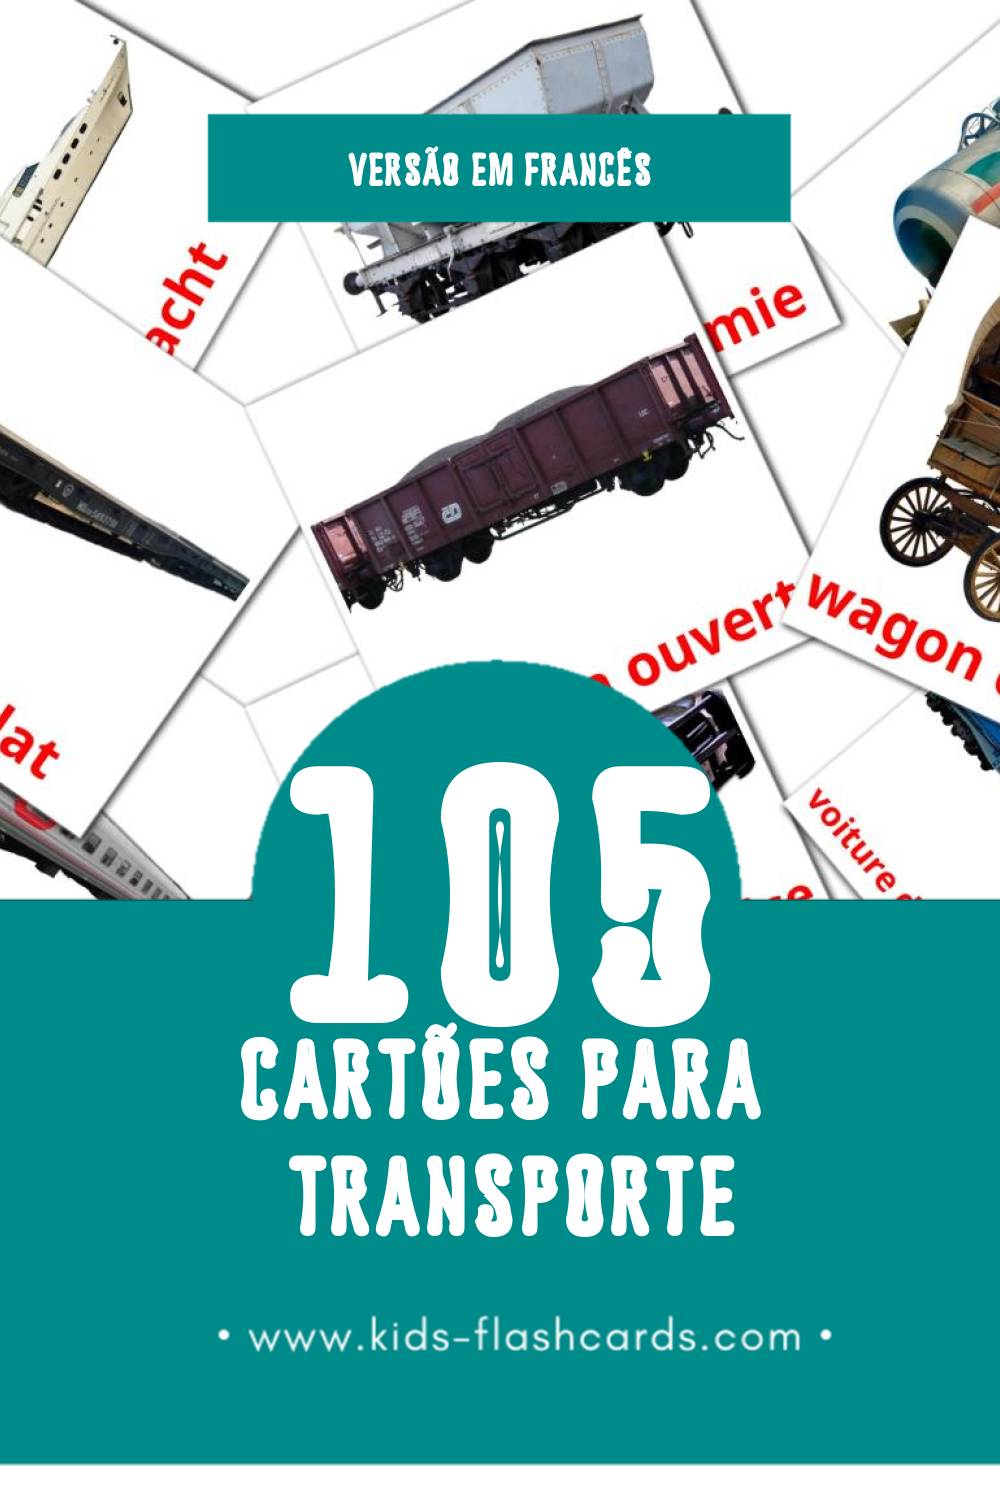 Flashcards de Les Transports Visuais para Toddlers (105 cartões em Francês)